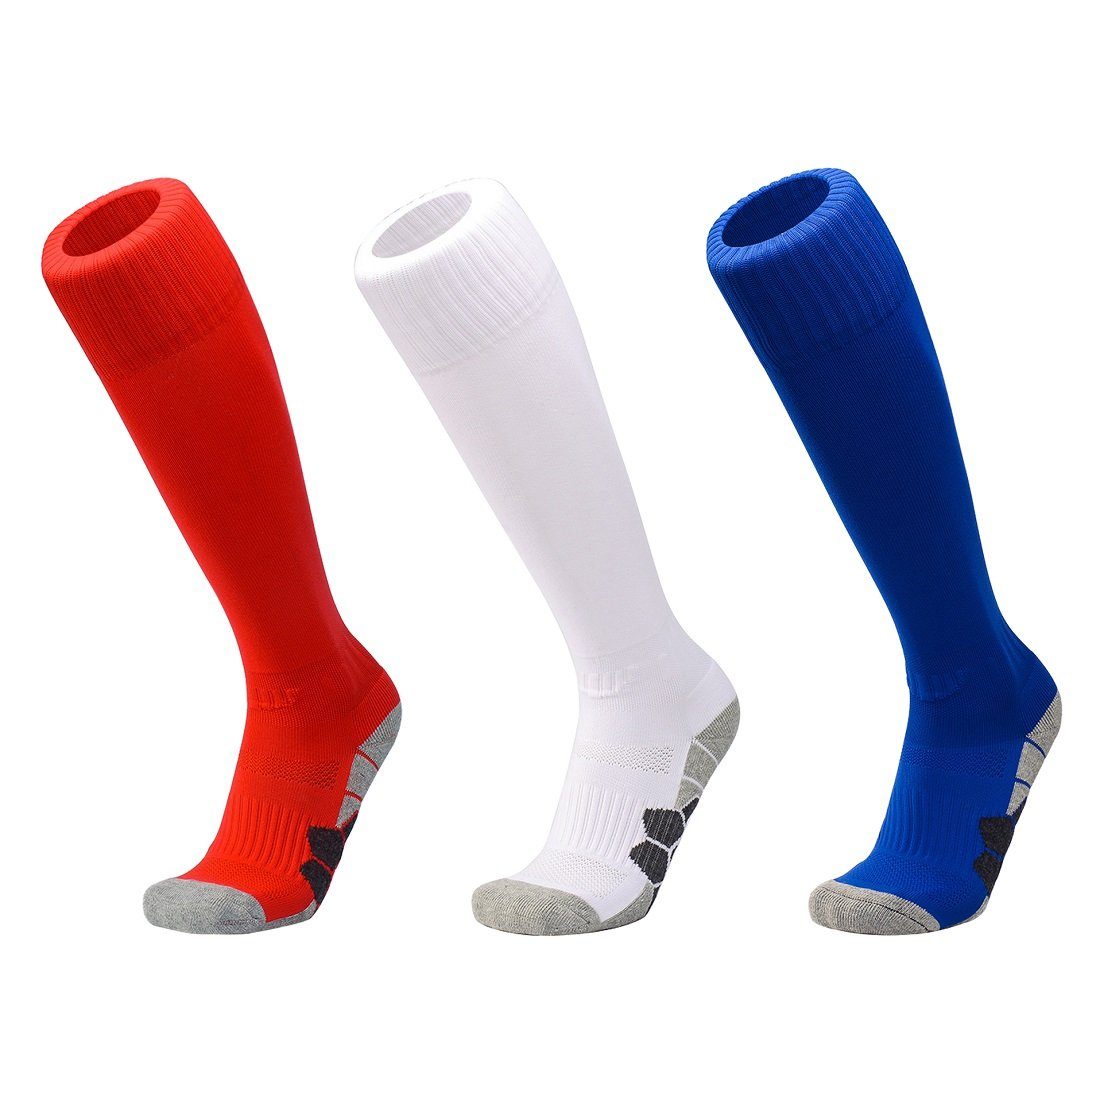 3 DEBAIJIA Knie Paare - Rot/Weiß/Blau Stutzenstrümpfe Sportsocken Lang Atmungsaktiv Fußballsocken Unisex Fußball